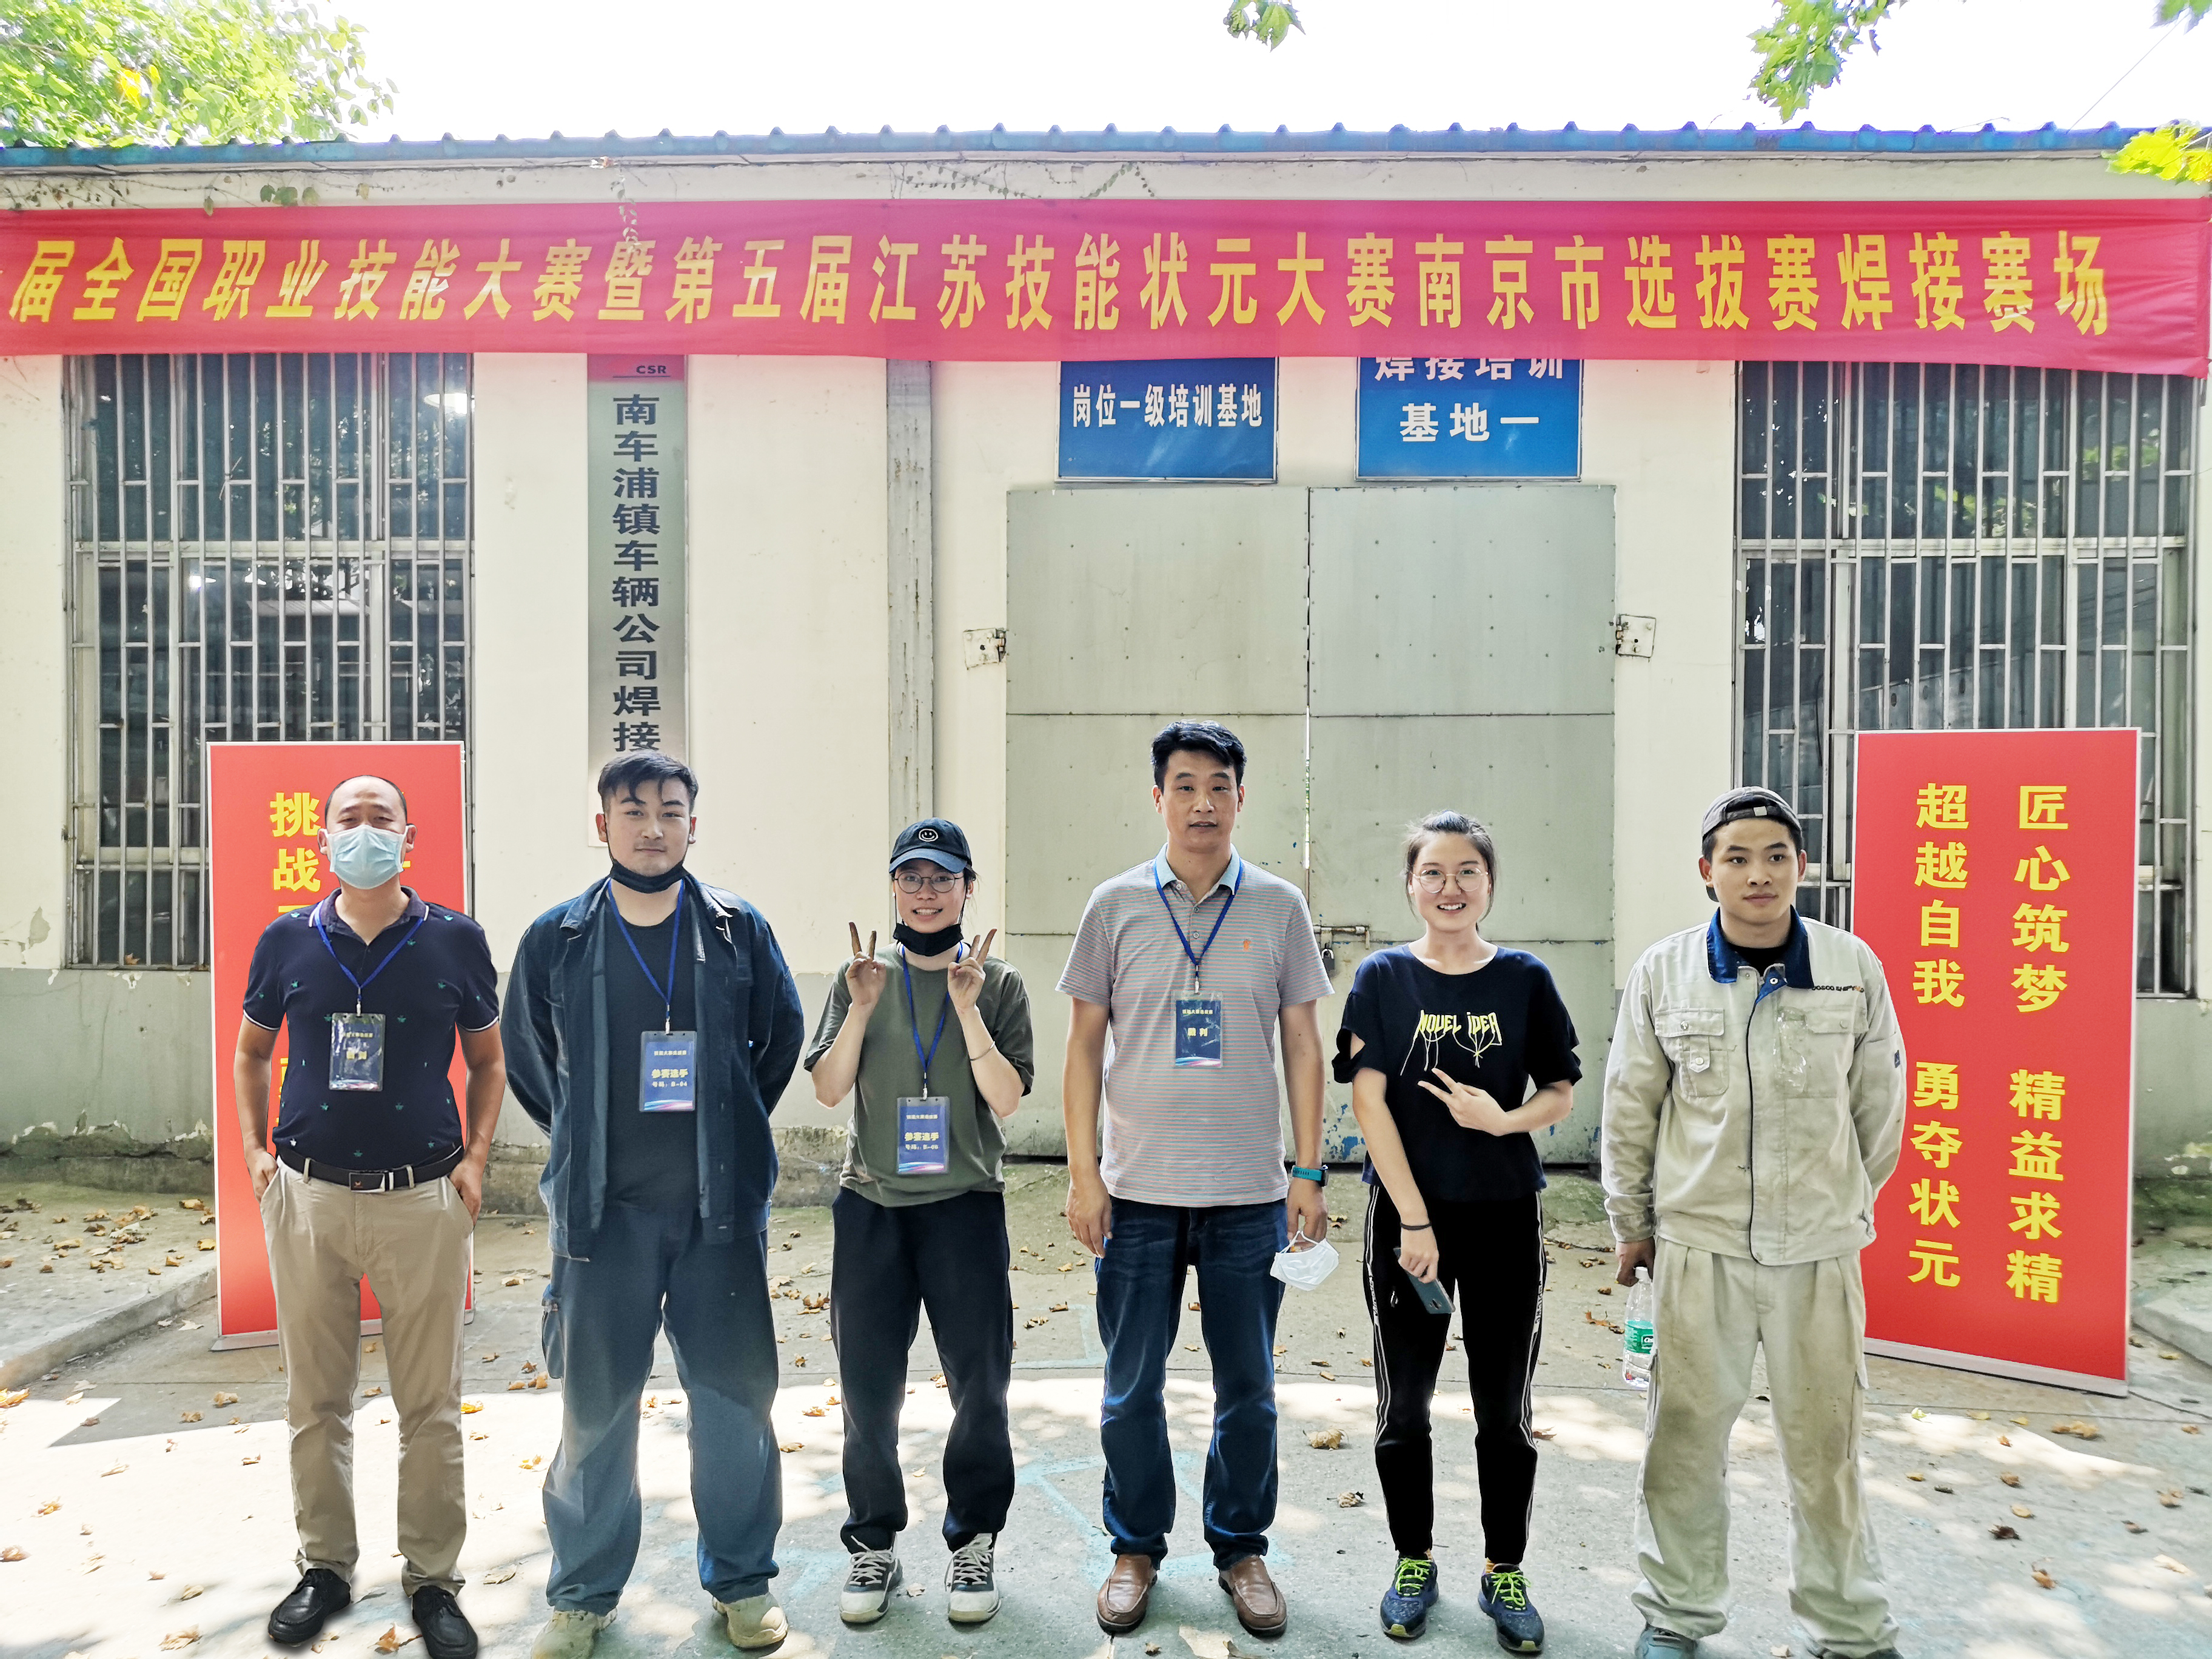 工作室指导学生获第一届全国职业技能大赛暨第五届江苏技能状元大赛南京市选拔赛焊接技术赛项学生组冠军